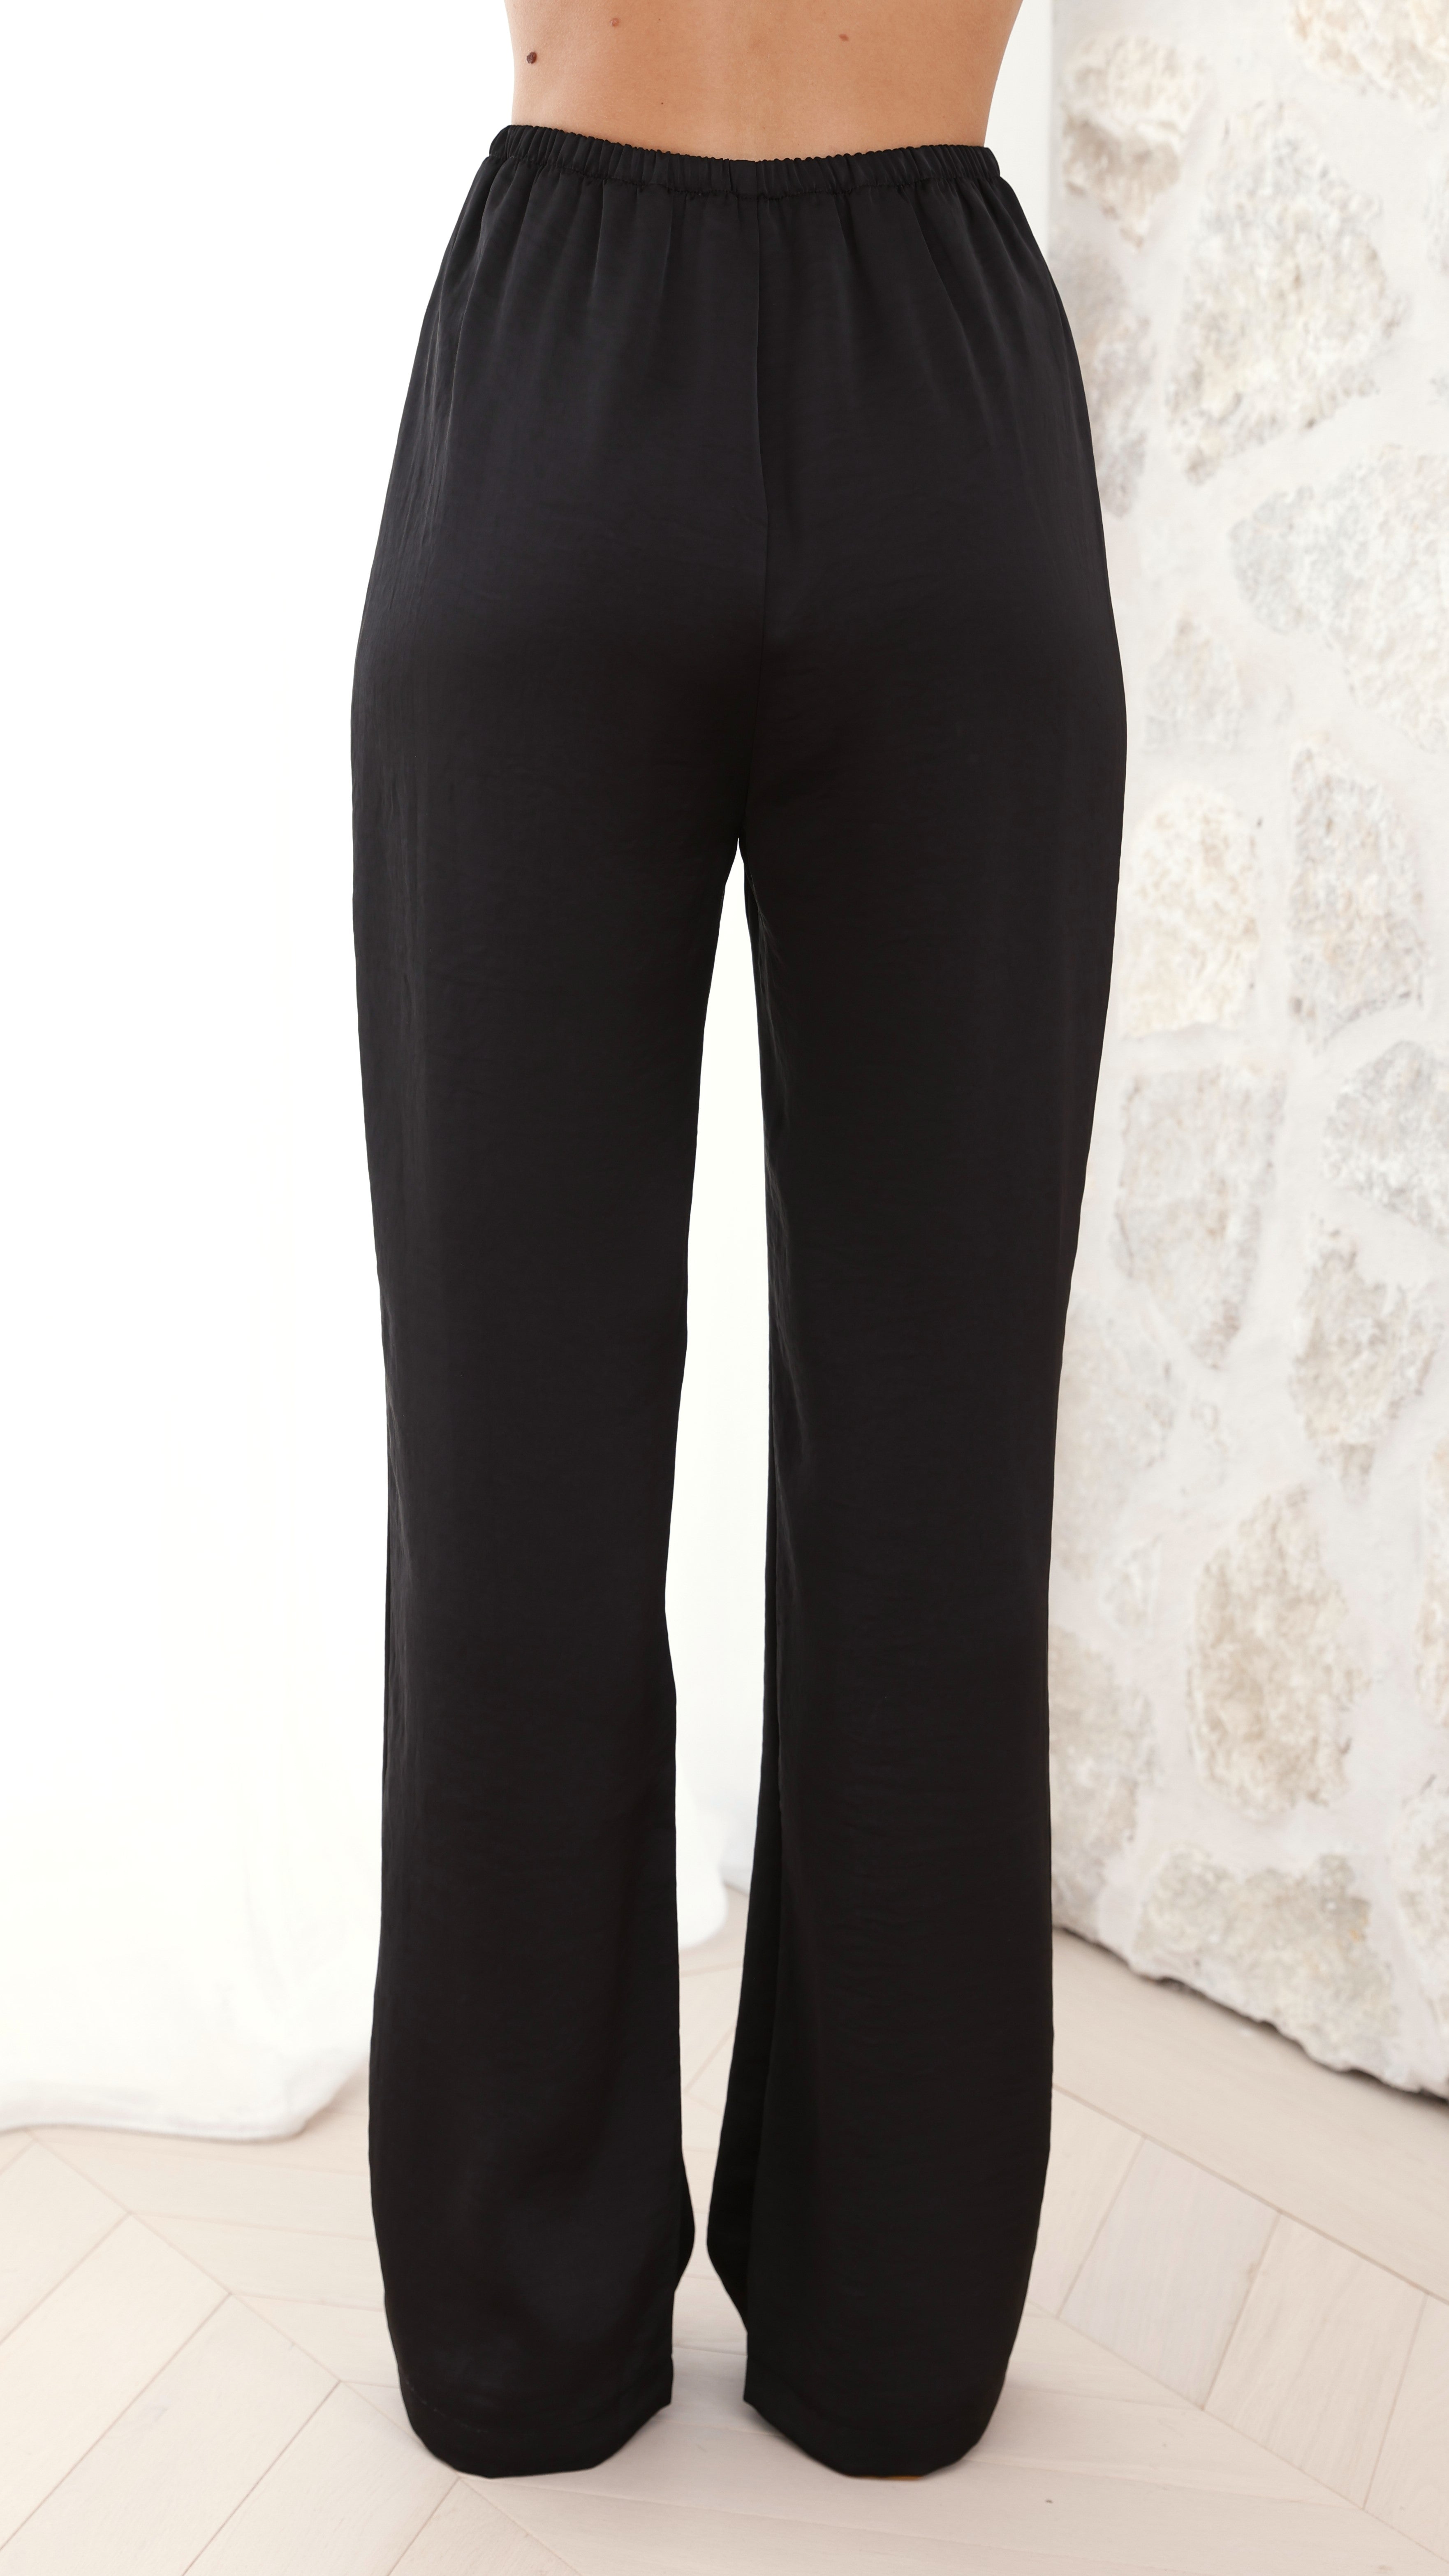 Imogen Button Pants - Black